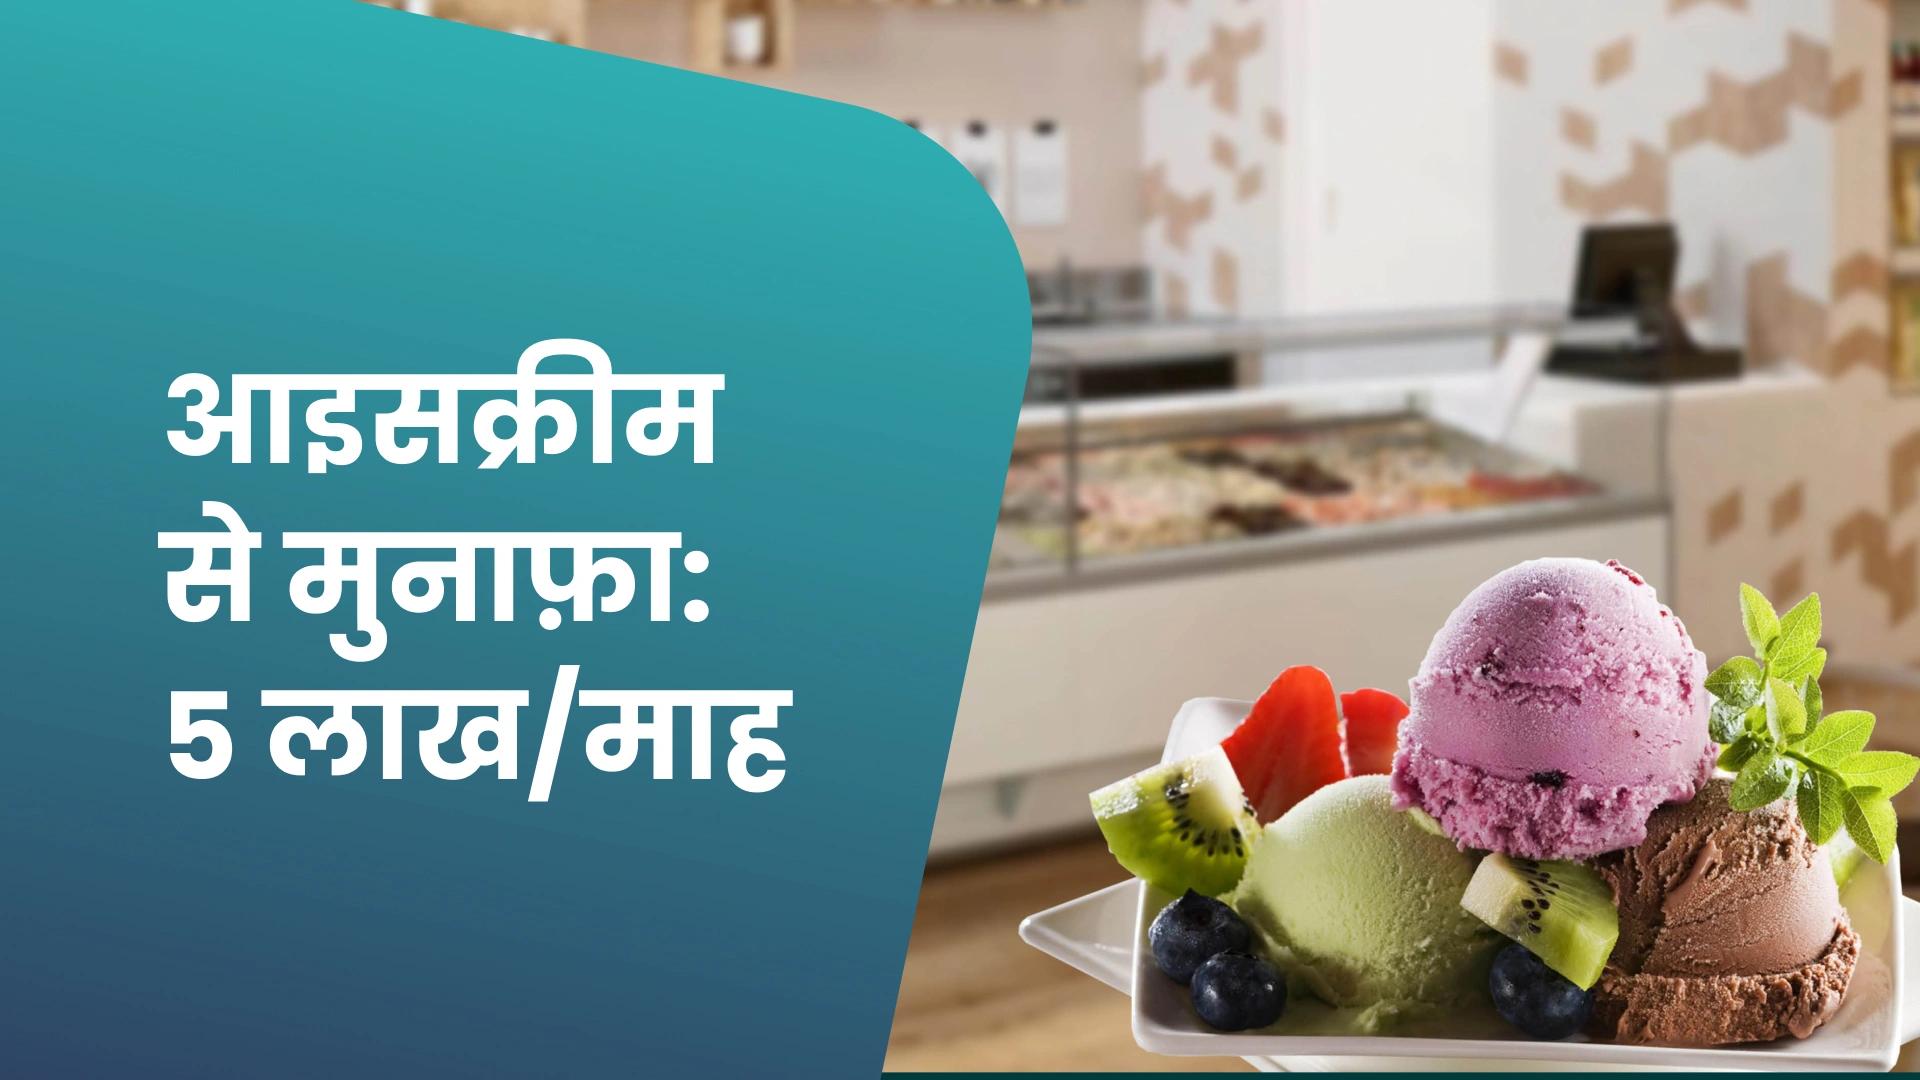 कोर्स ट्रेलर: आइसक्रीम का व्यवसाय - ₹3 से 5 लाख प्रति माह कमाएँ। अधिक जानने के लिए देखें।